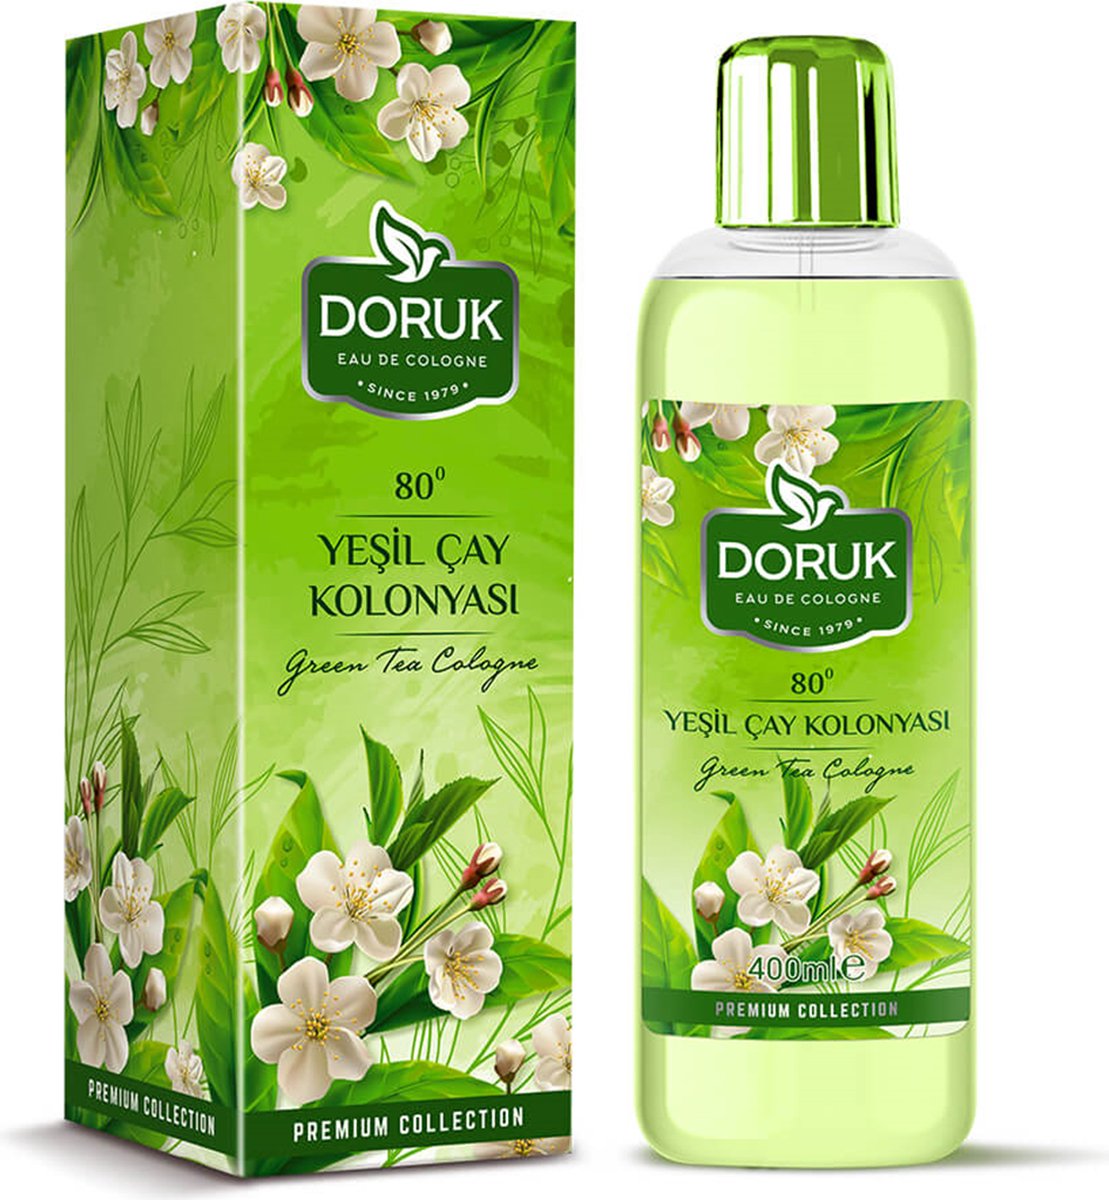 Doruk - Eau de cologne 400ml - 80° alcohol - Green teageur - Optimale desinfectie van handen